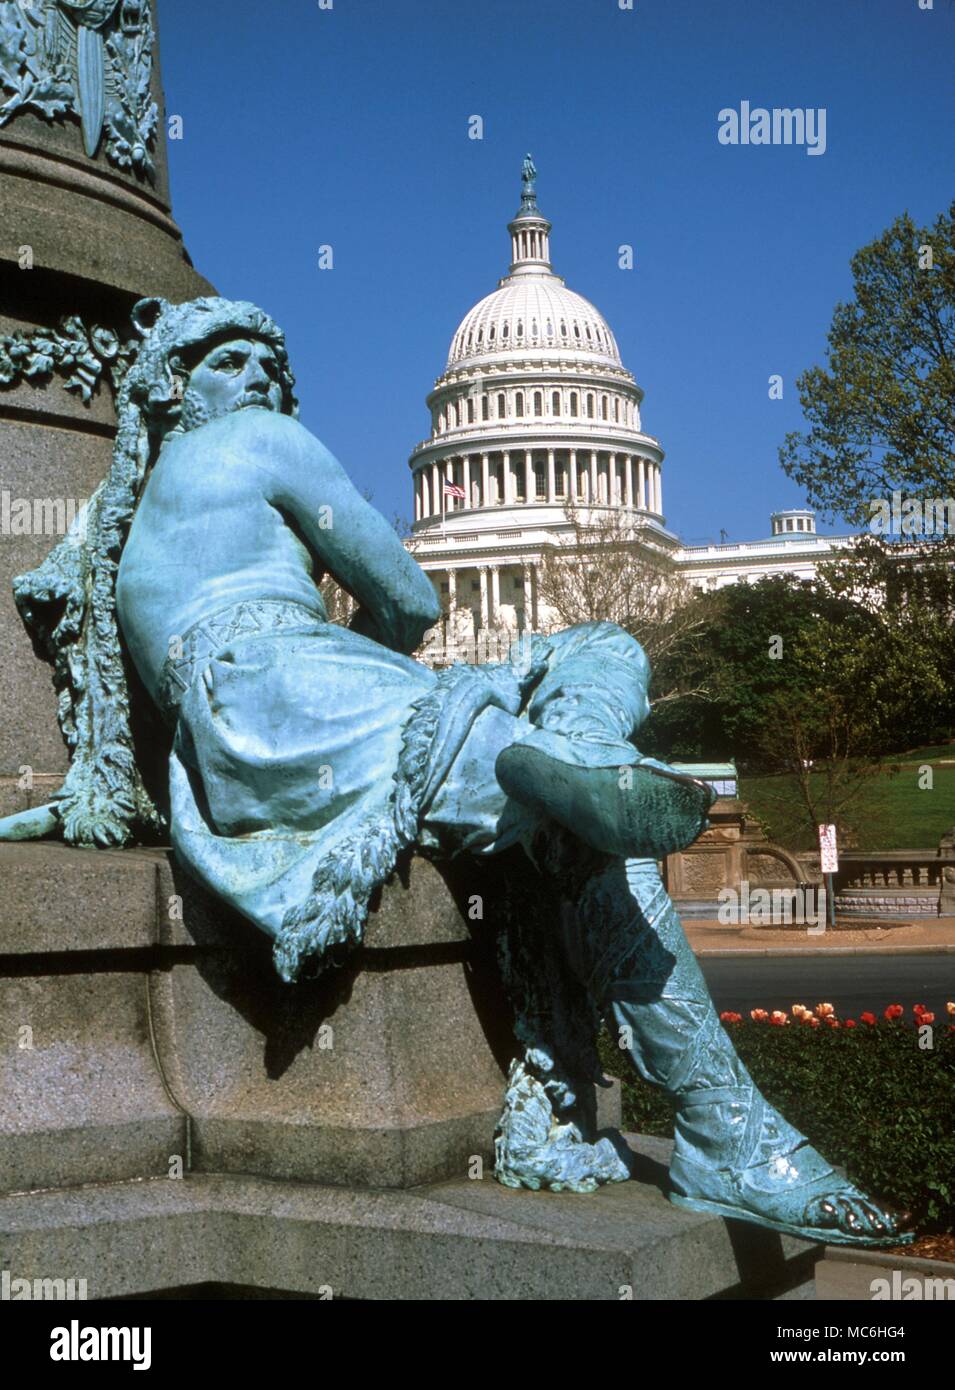 Ley Lines. Le Capitole à Washington DC vu de la statue du Président Garfield. Il était franc-maçon et le monument est sur un important signe astro ley, la connexion avec des sites occultes de la ville. Banque D'Images